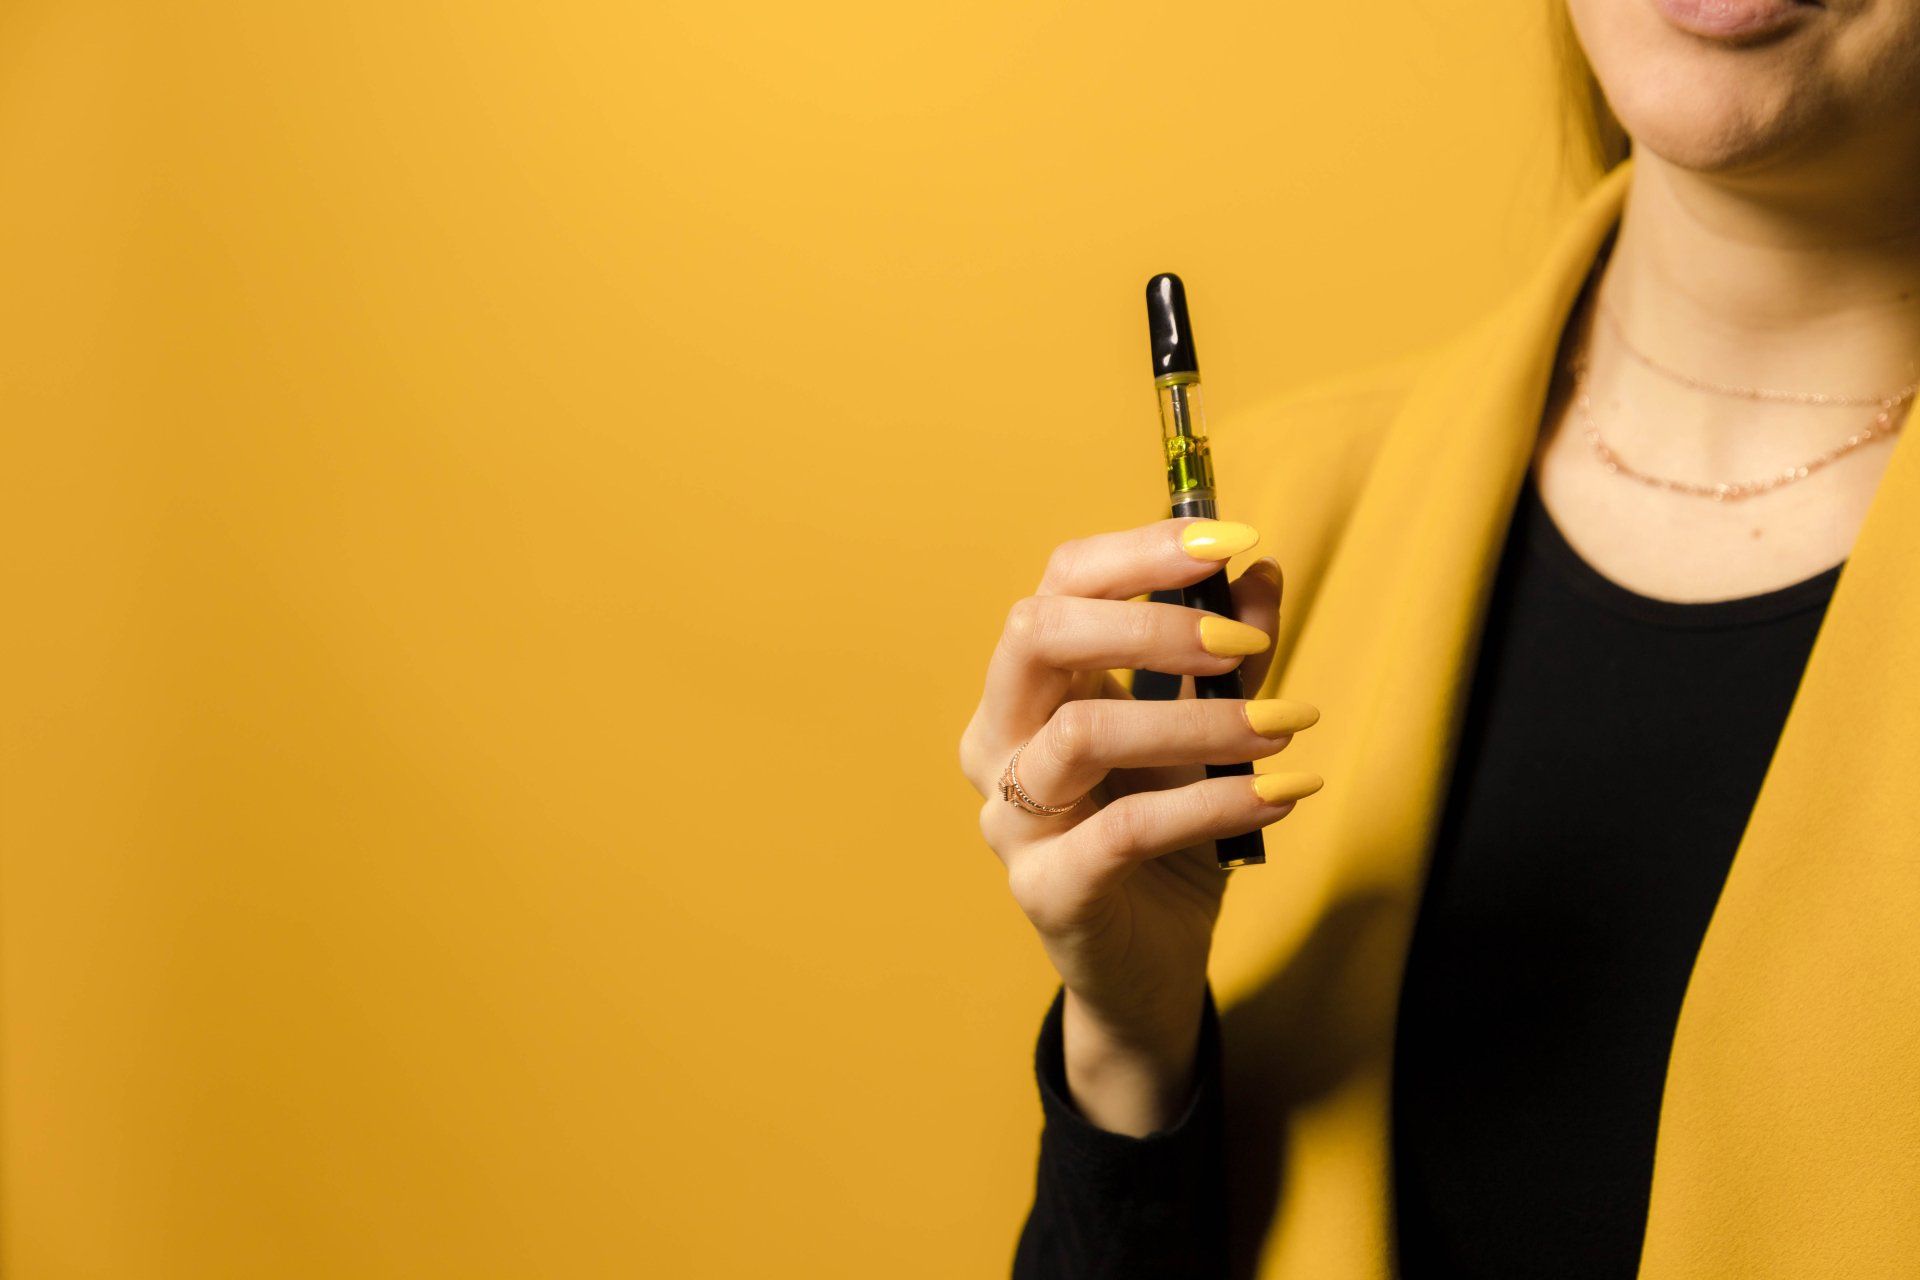 Vape pen in woman's hand